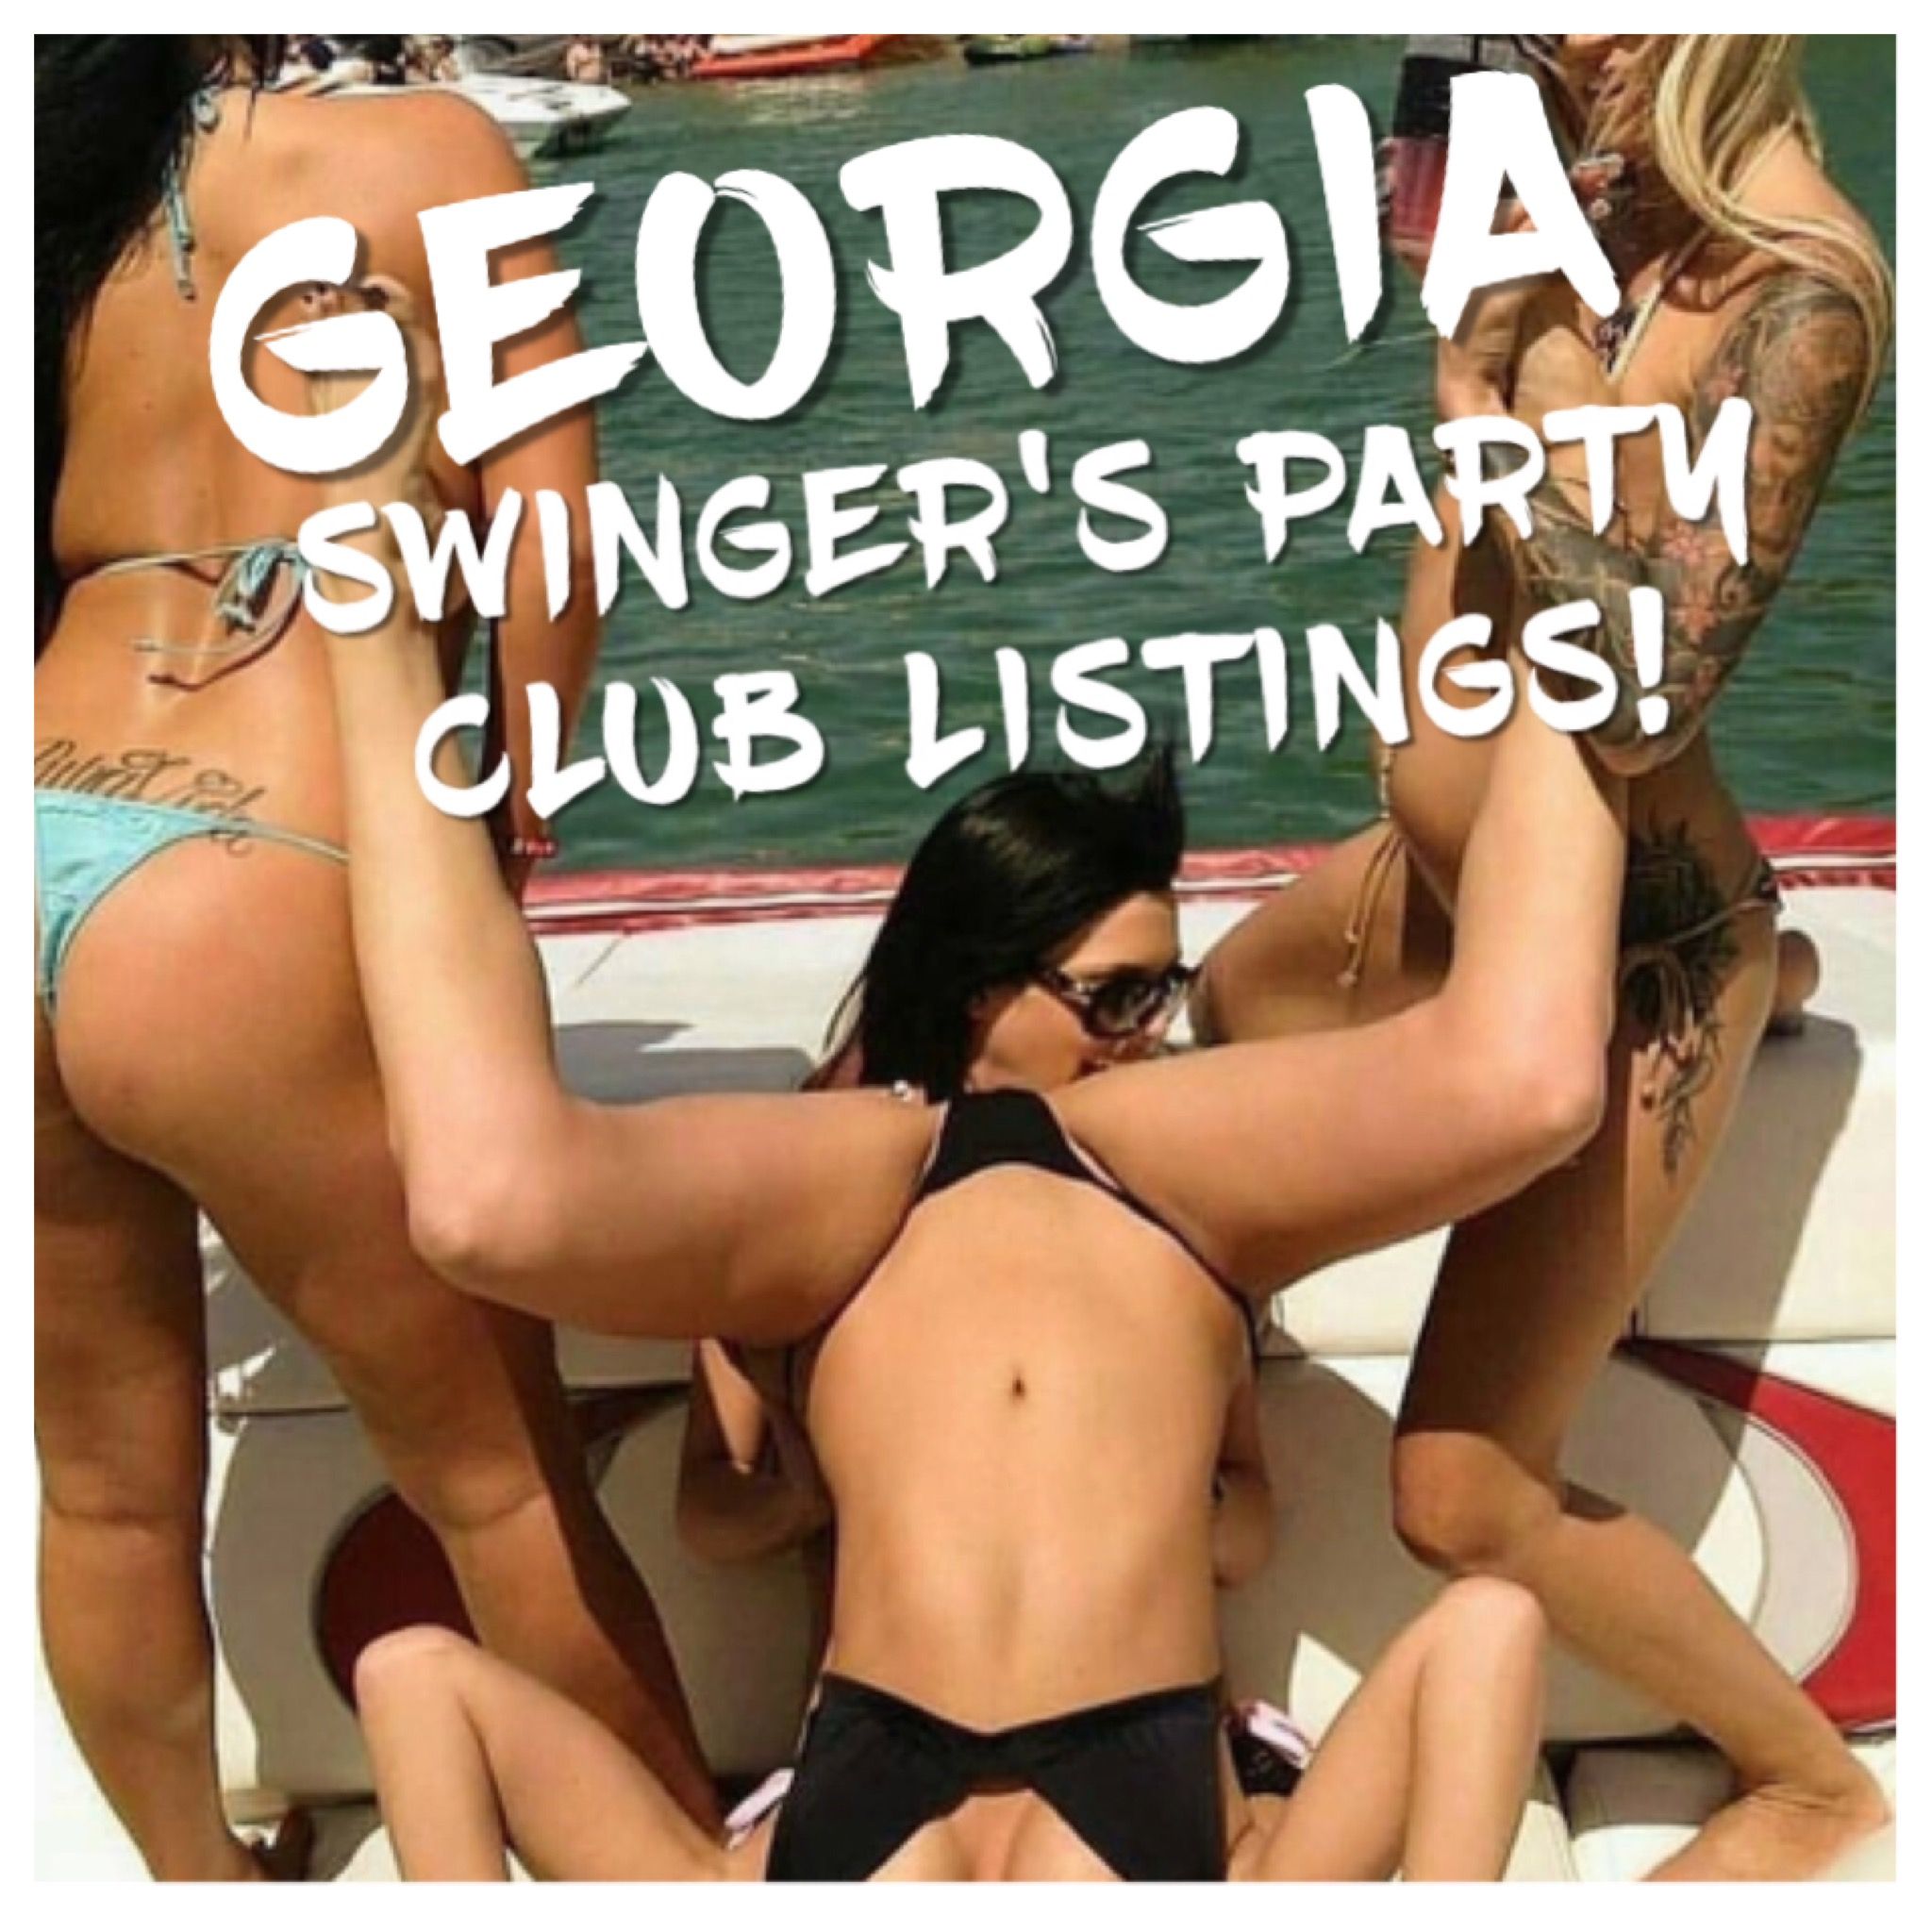 Free nj swinger parties listings 